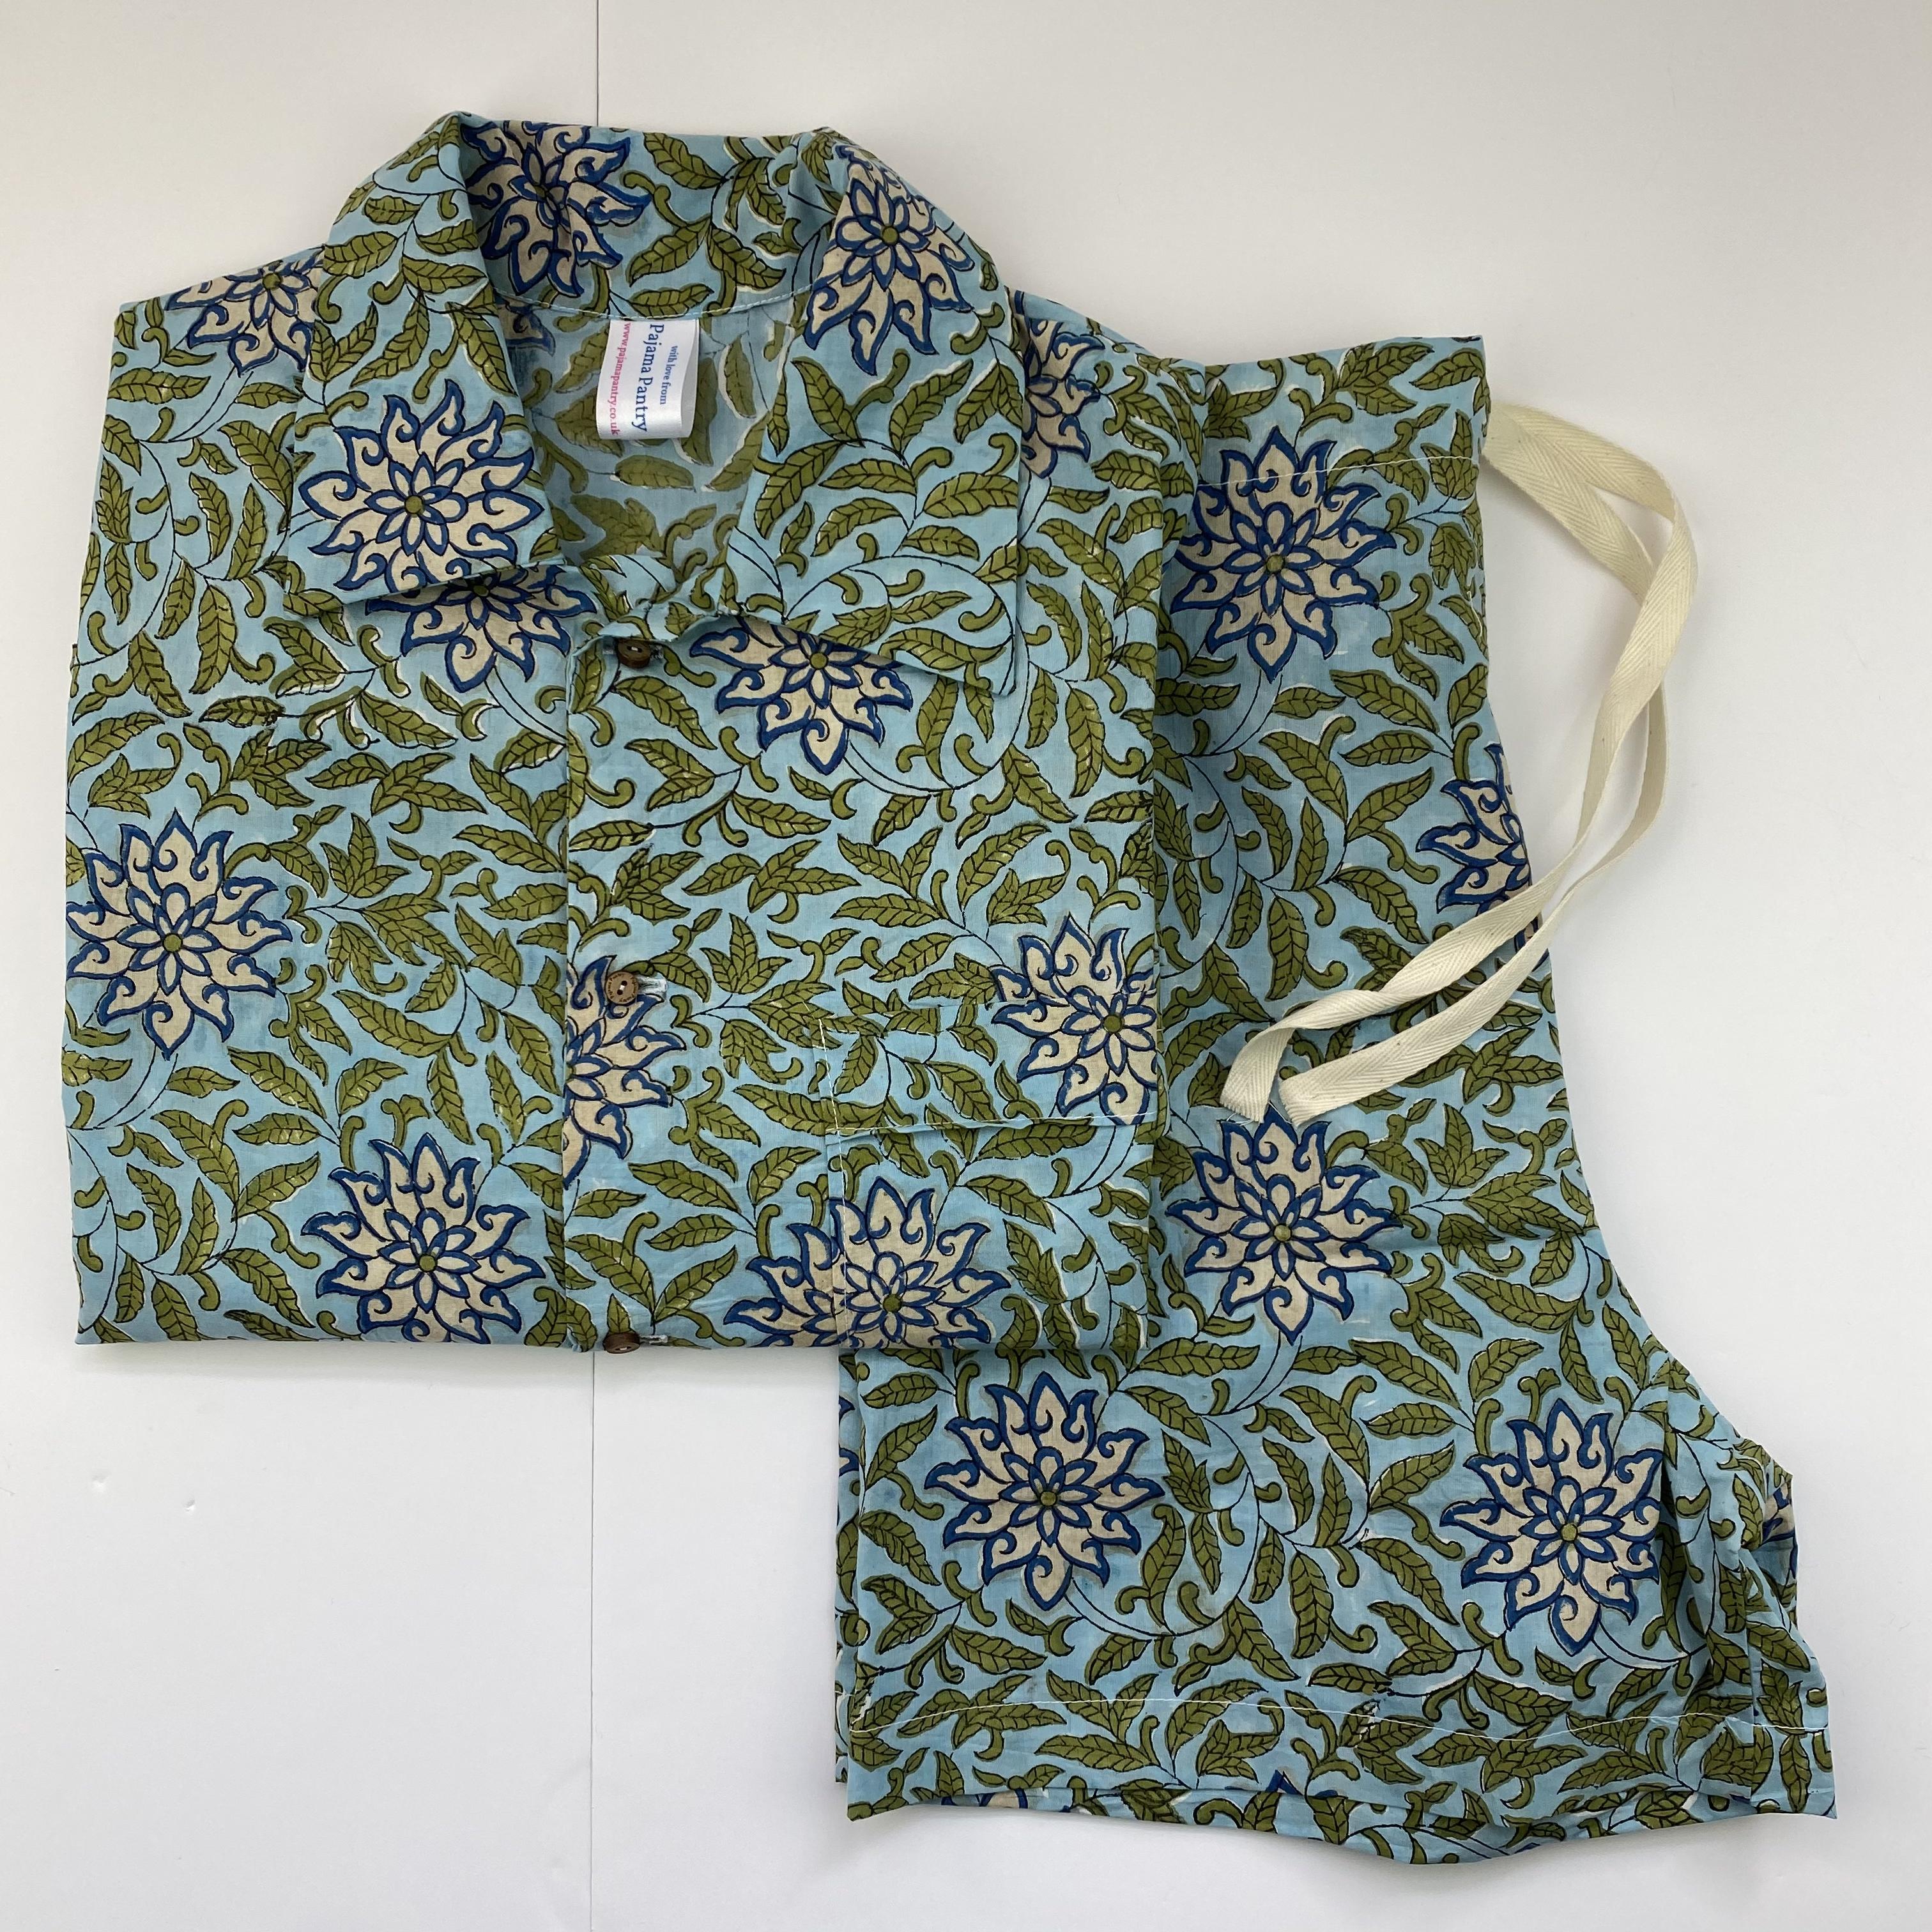 Turquoise starflower matching cotton pajama shorts set, shorts folded sideways